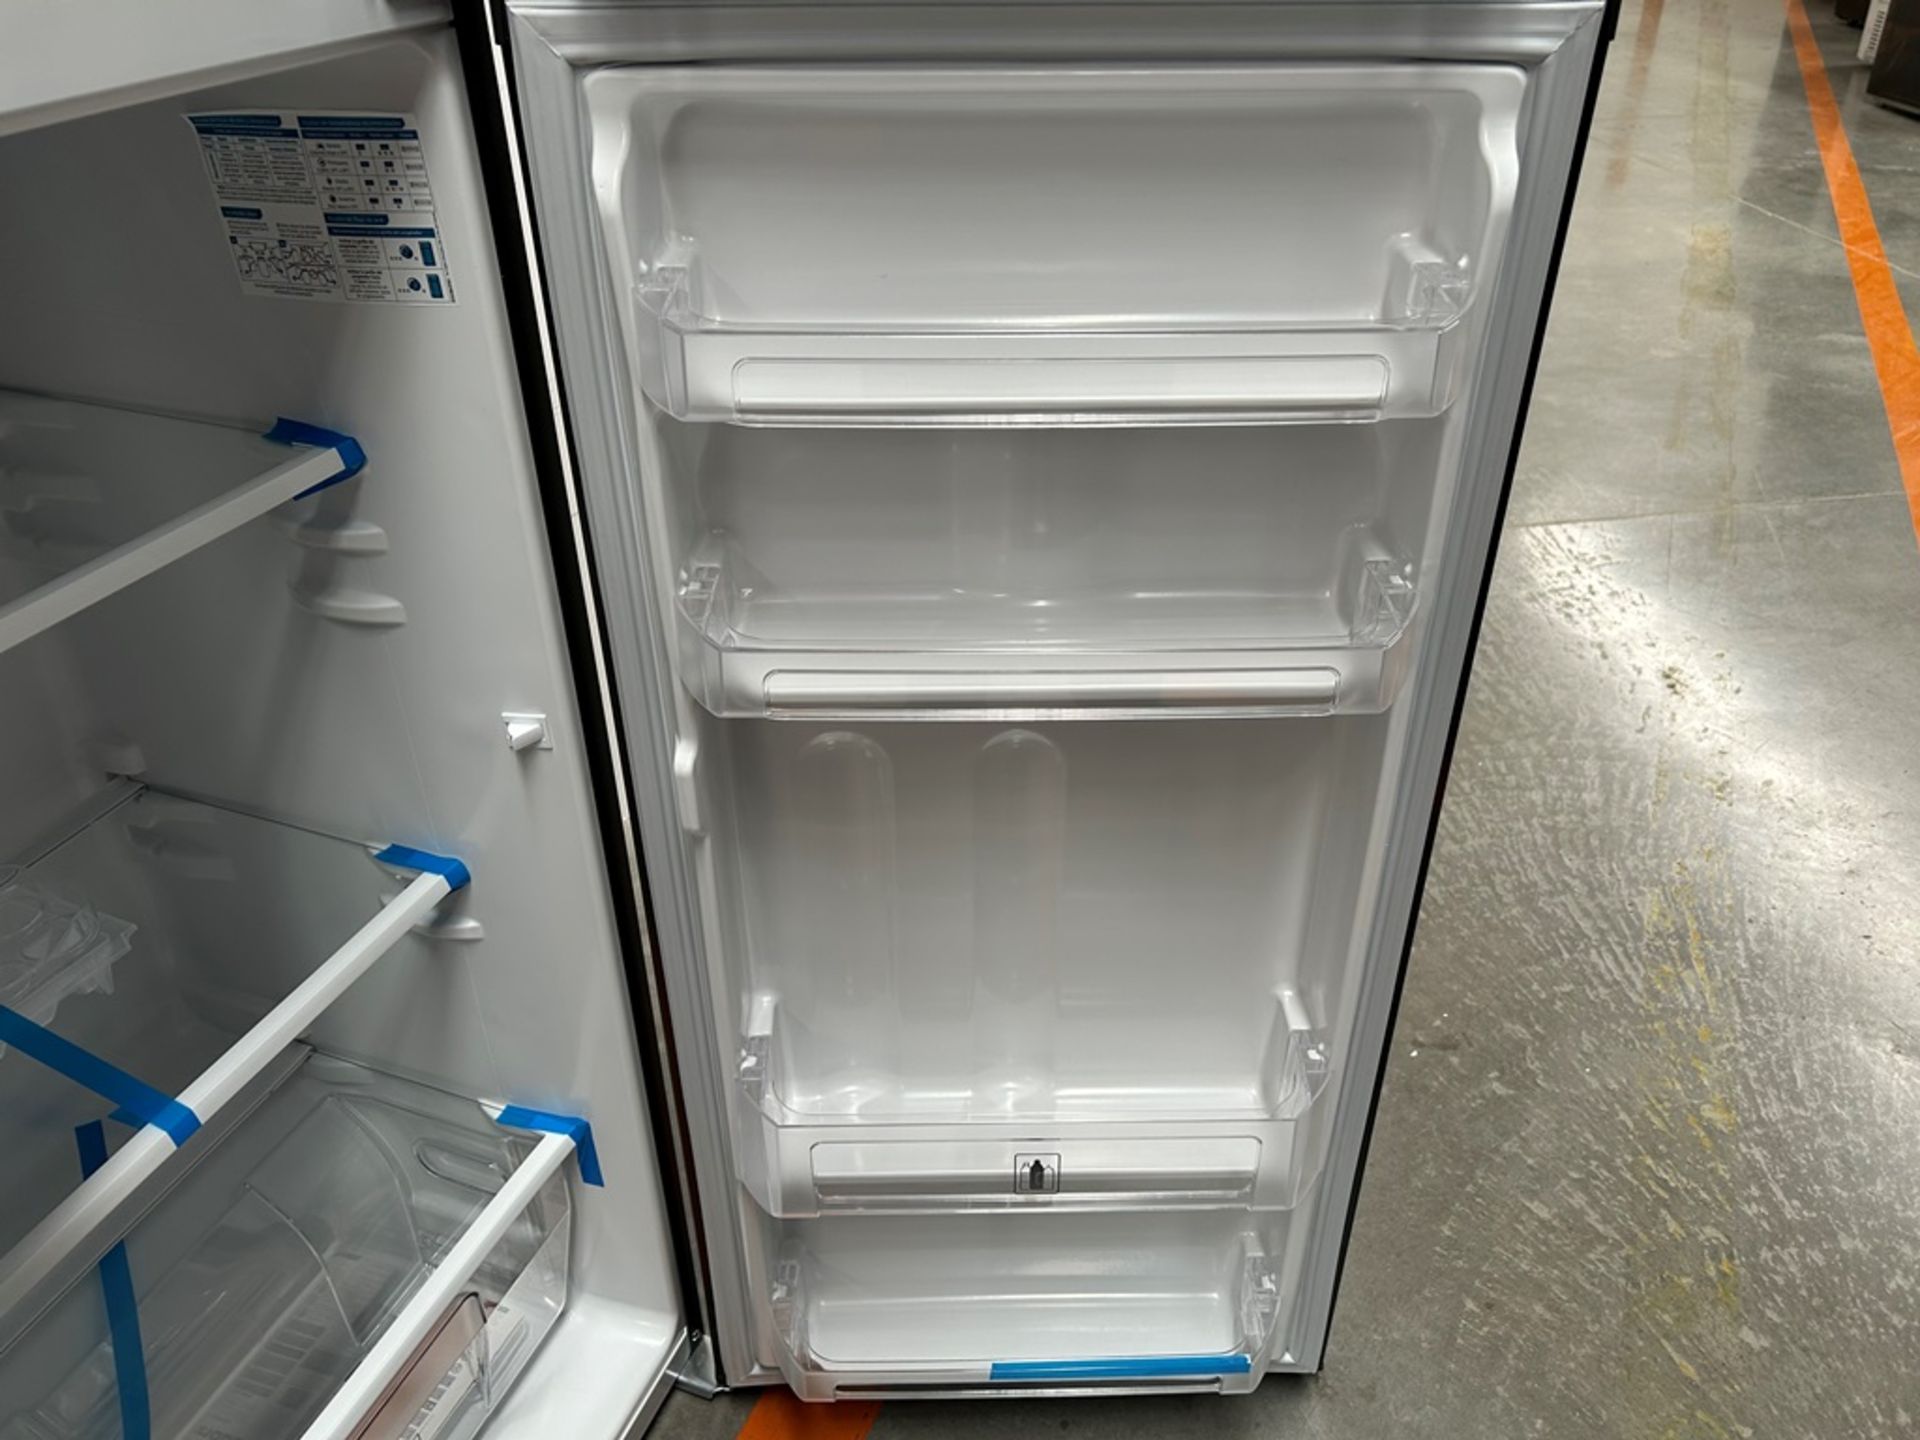 Lote de 2 refrigeradores contiene: 1 refrigerador Marca MABE, Modelo RMA250PVMRP0, Serie 13859, Col - Image 13 of 18